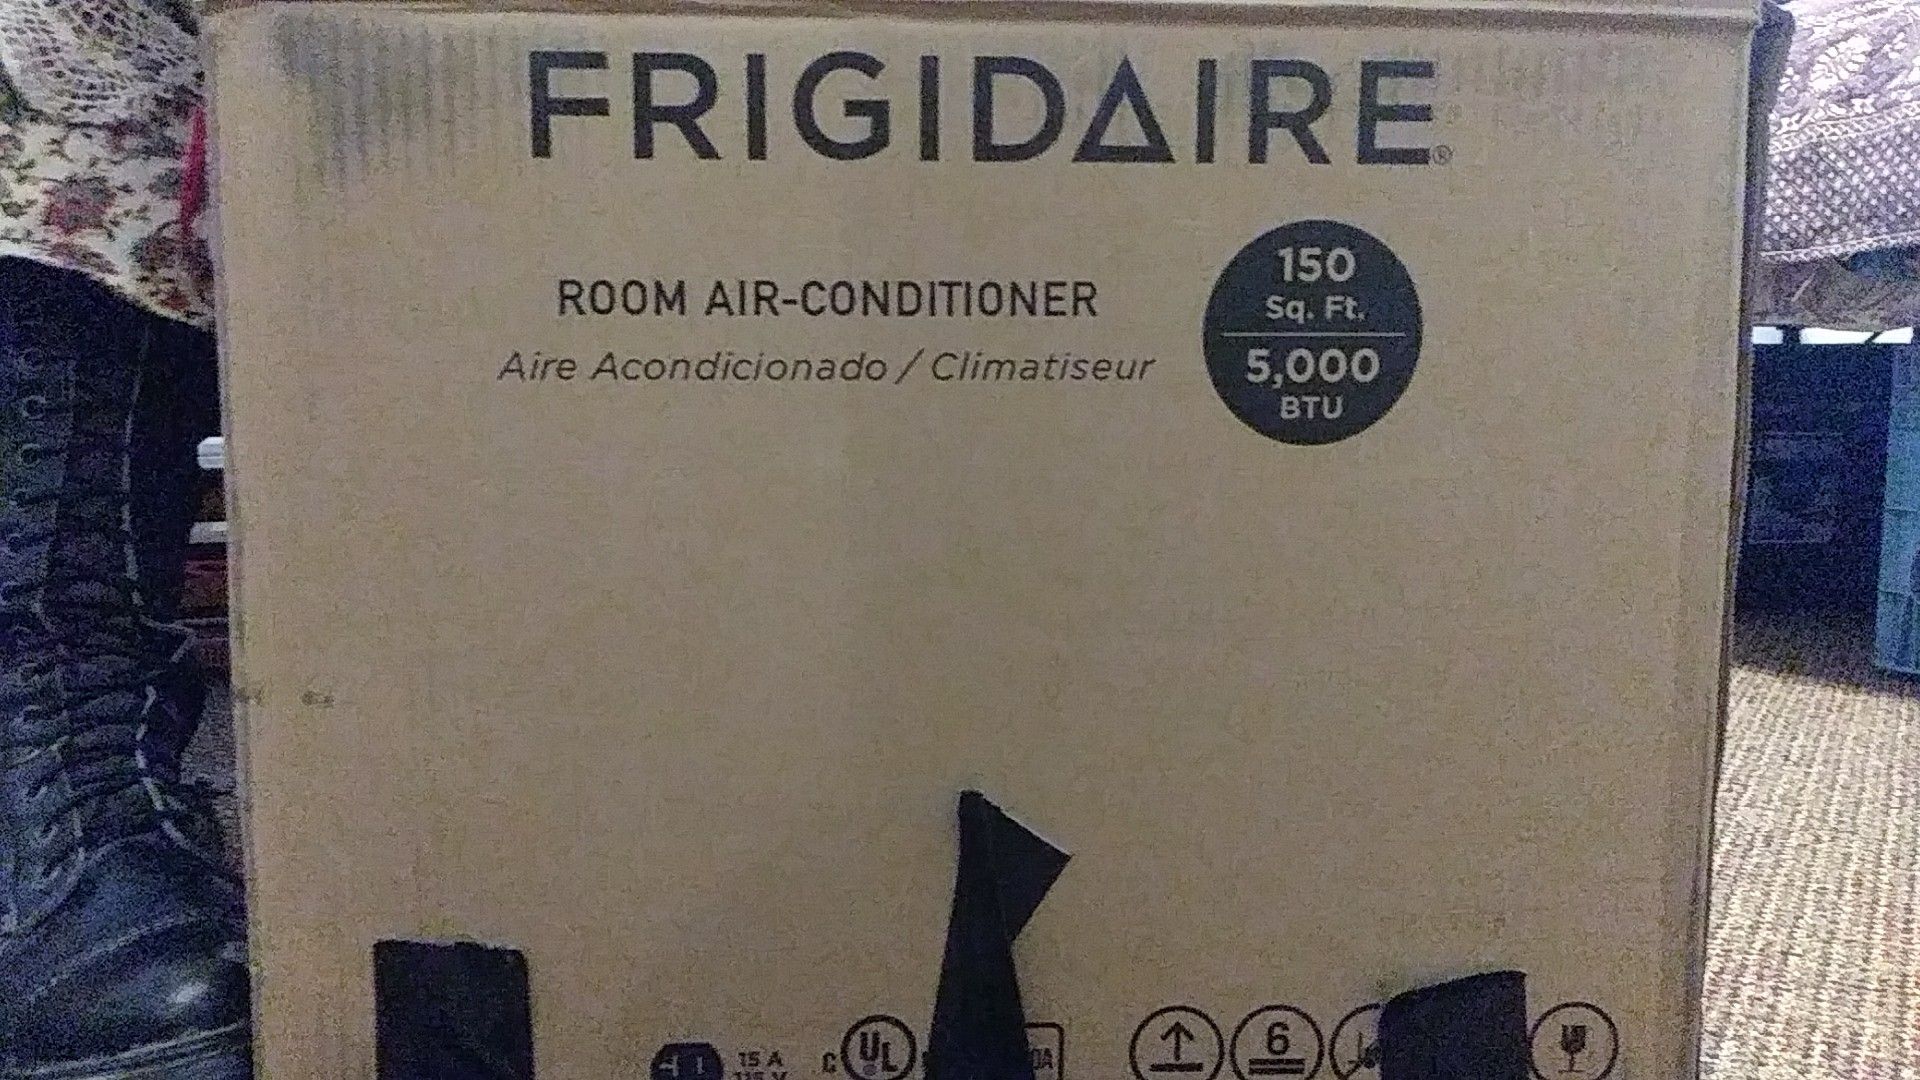 Frigidaire, room air conditioner